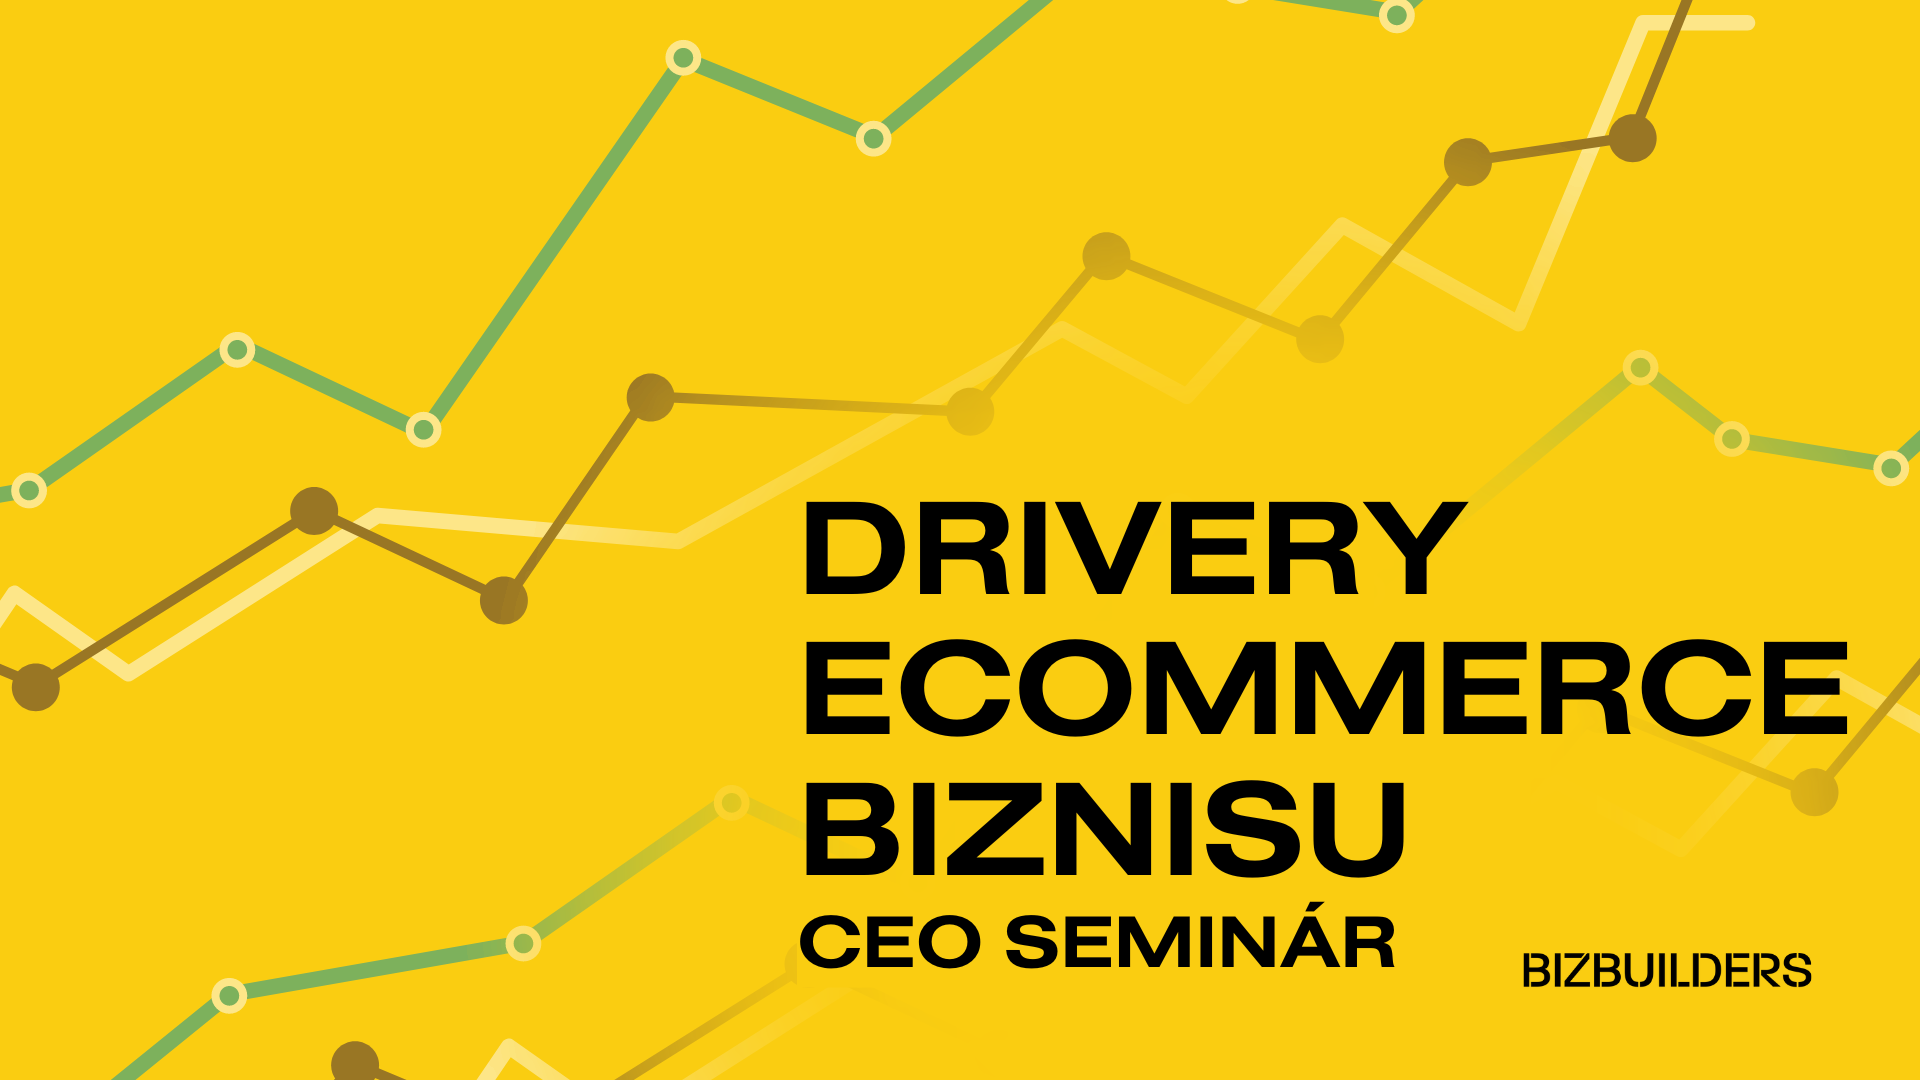 Drivery e-commerce biznisu